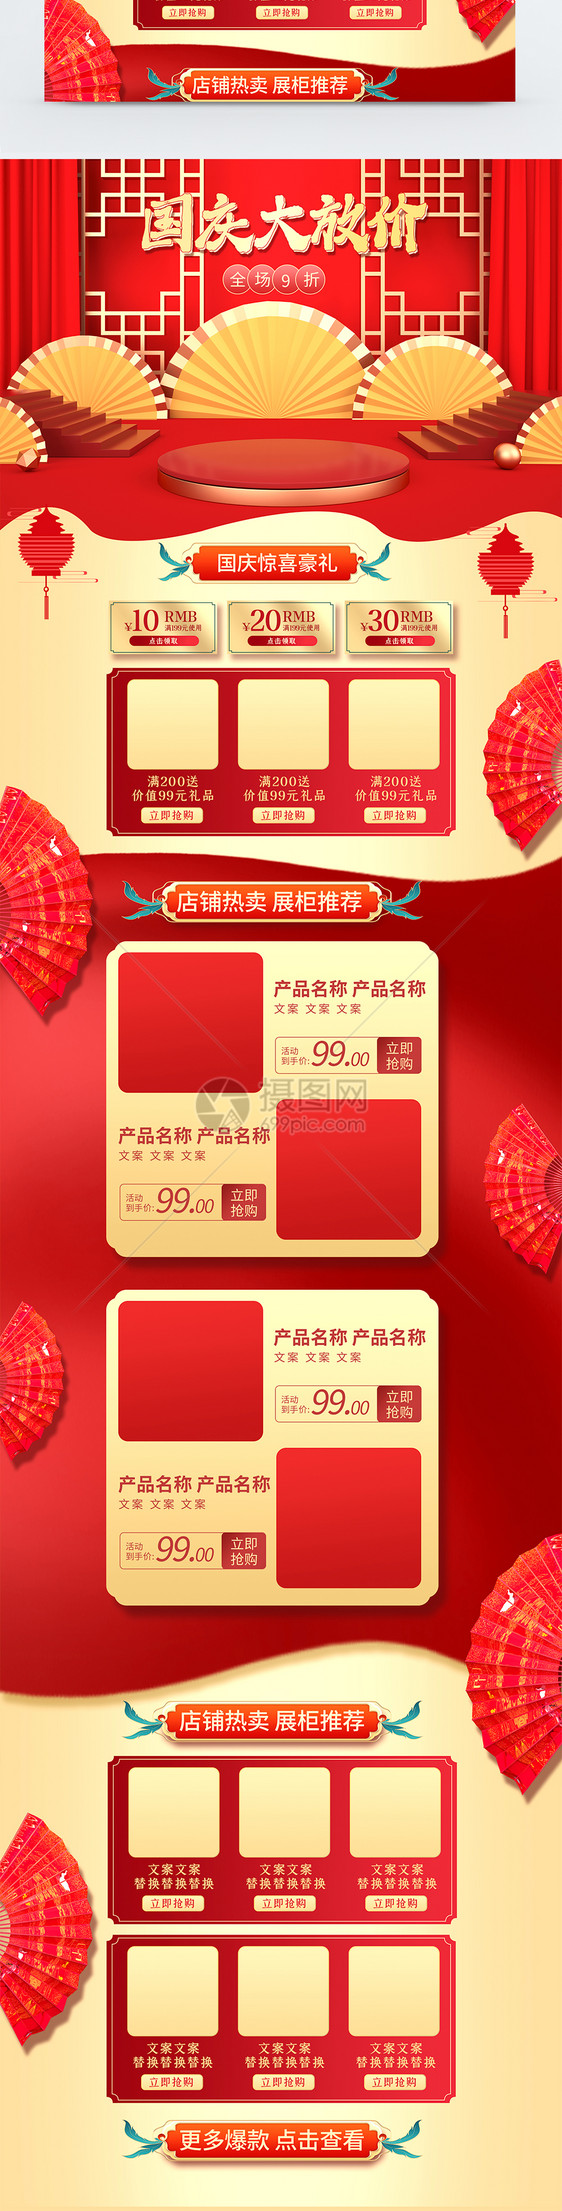 红色喜庆大气电扇淘宝国庆节之国庆大放价促销首页模板图片